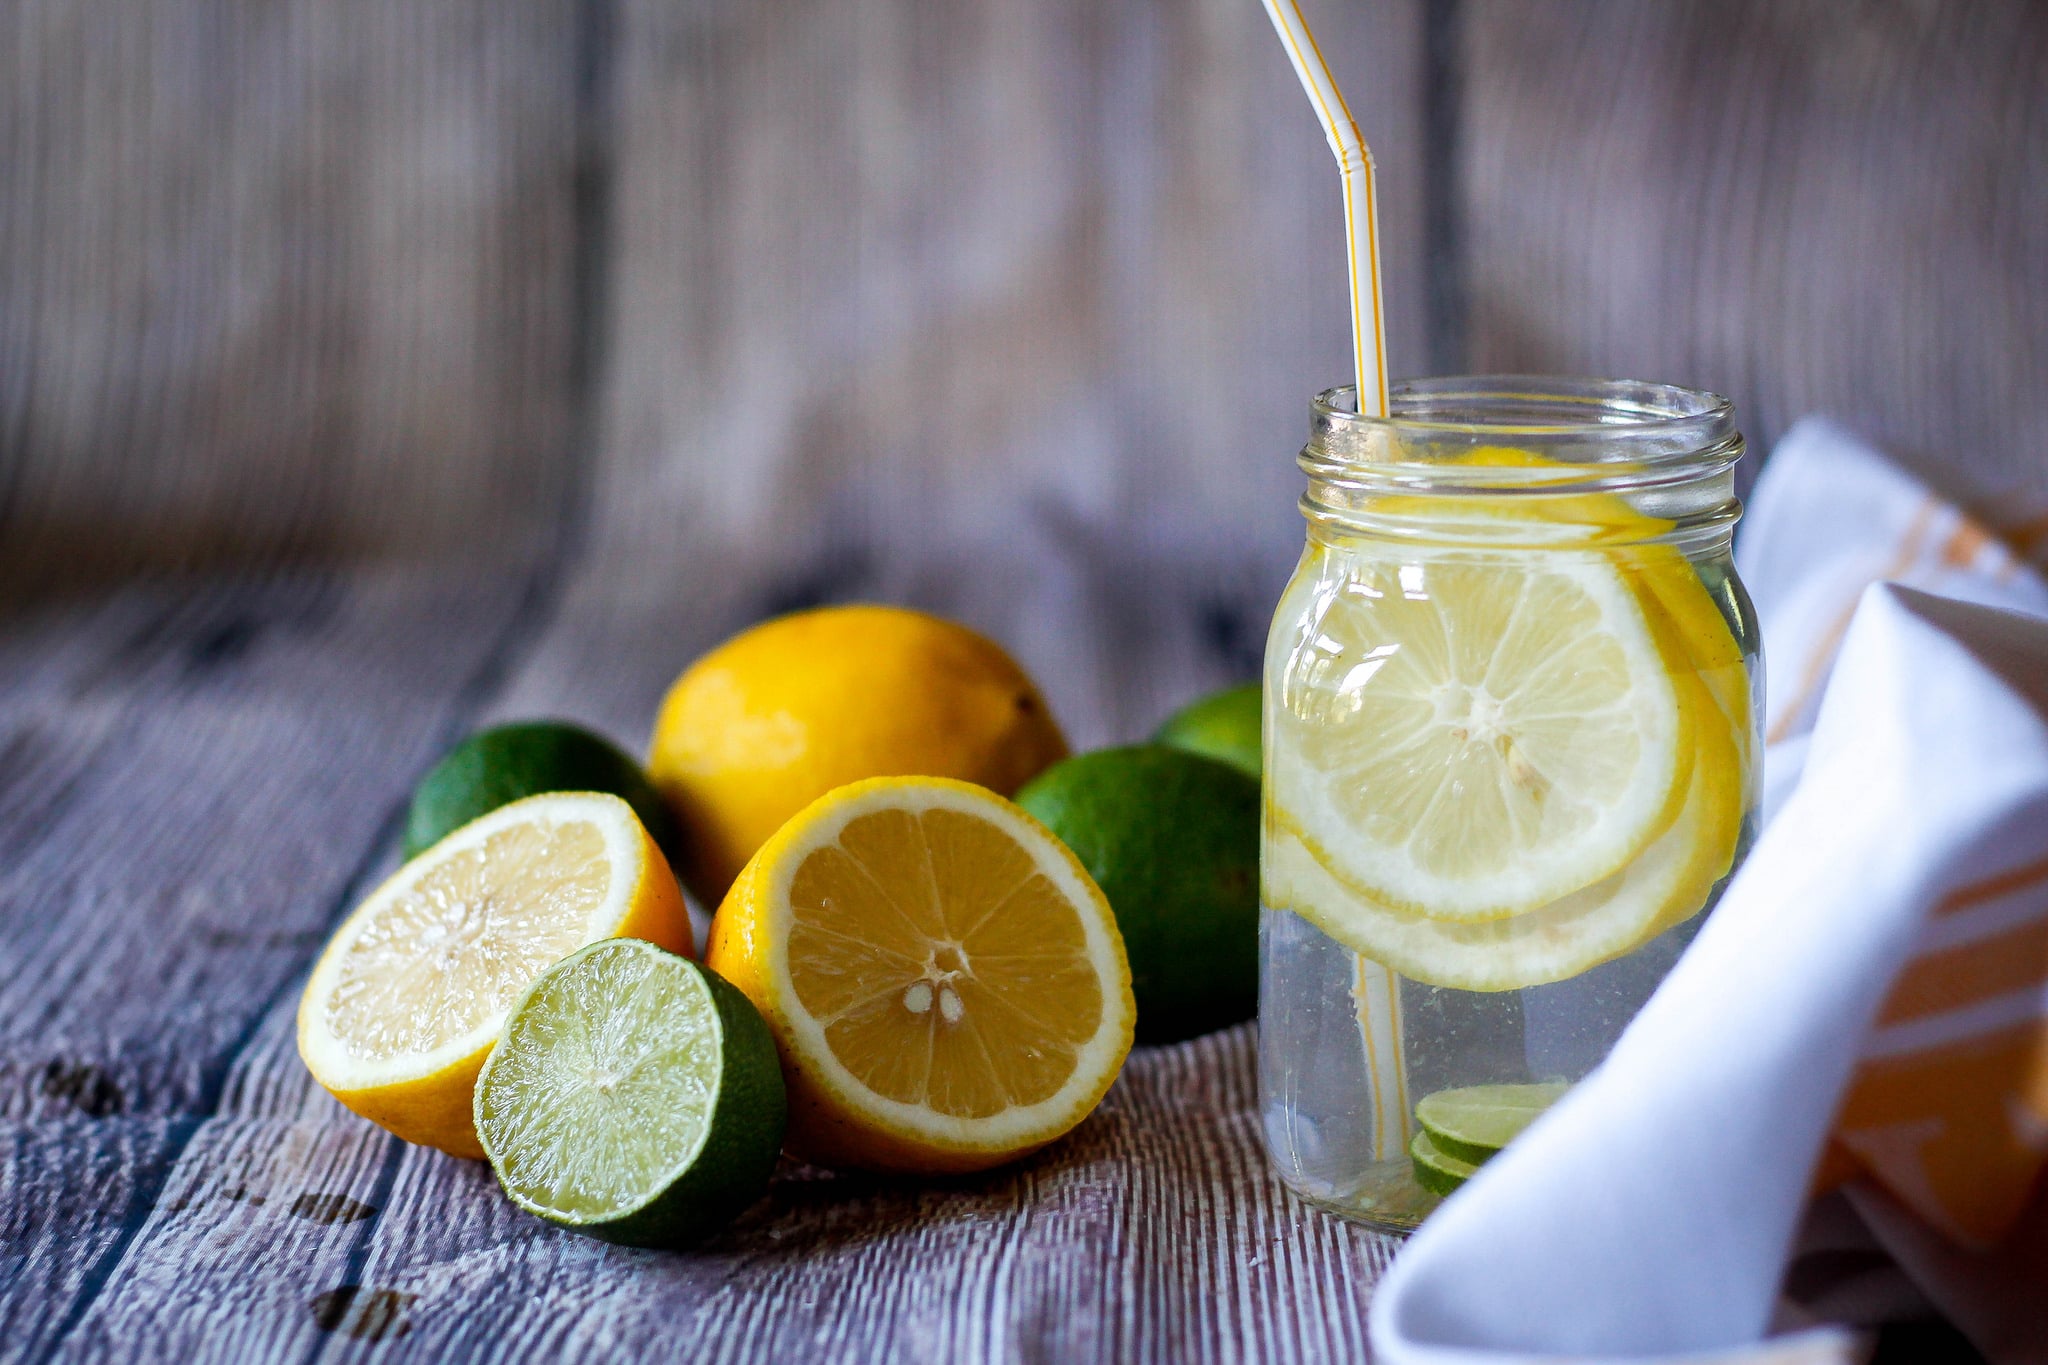 Натощак воду с лимоном можно. Вода с лимоном. Стакан воды с лимоном. Лимон. Теплая вода с лимоном.